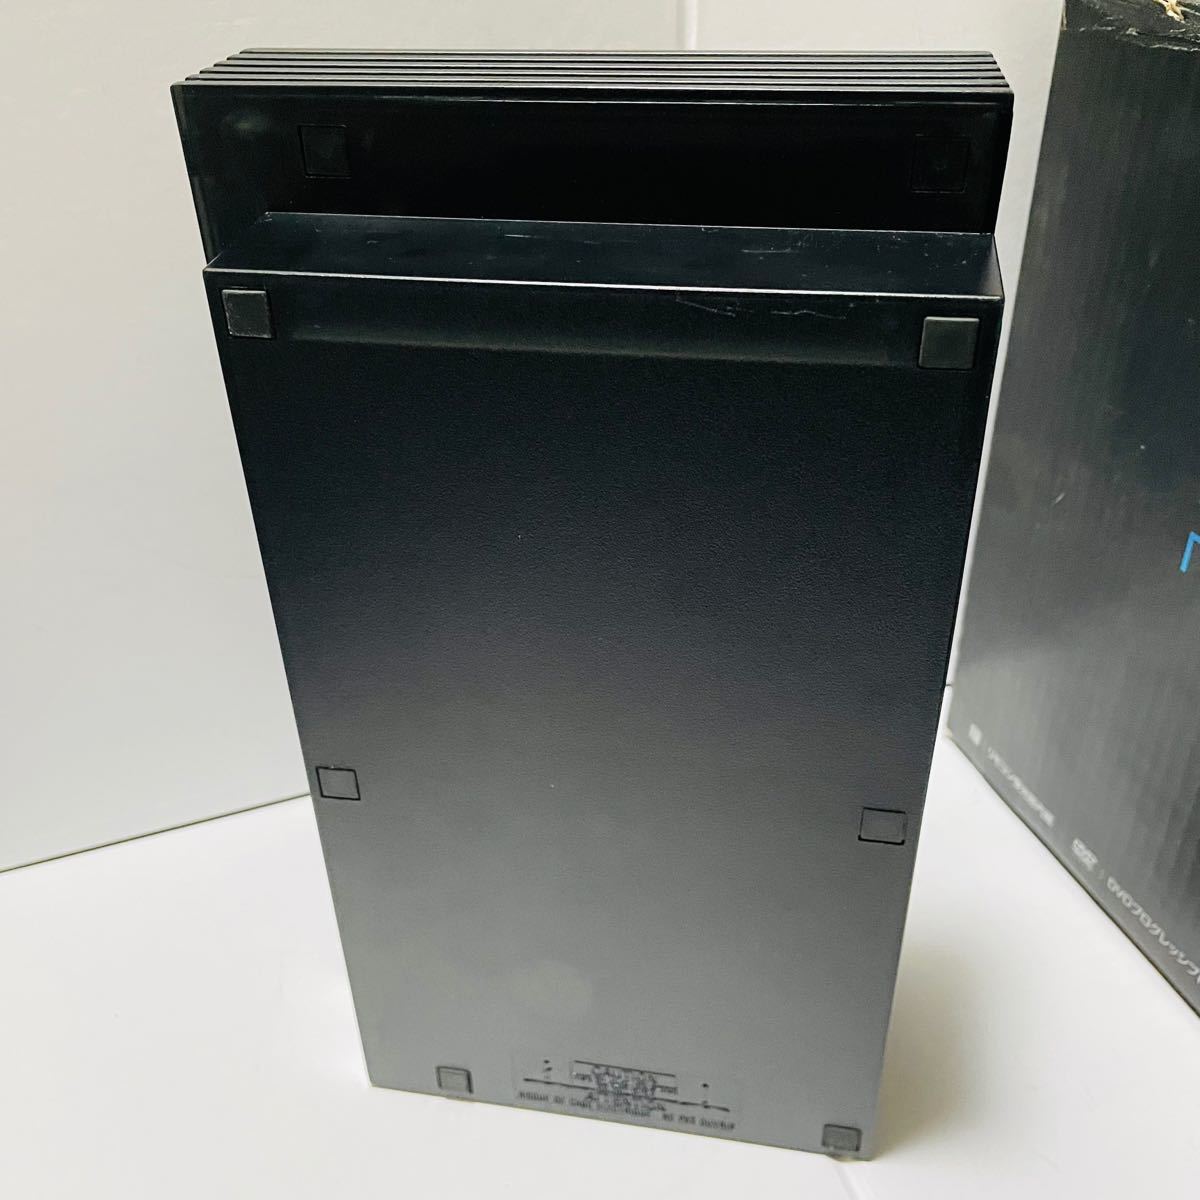 SONY PlayStation2 SCPH-50000 ミッドナイト・ブラック